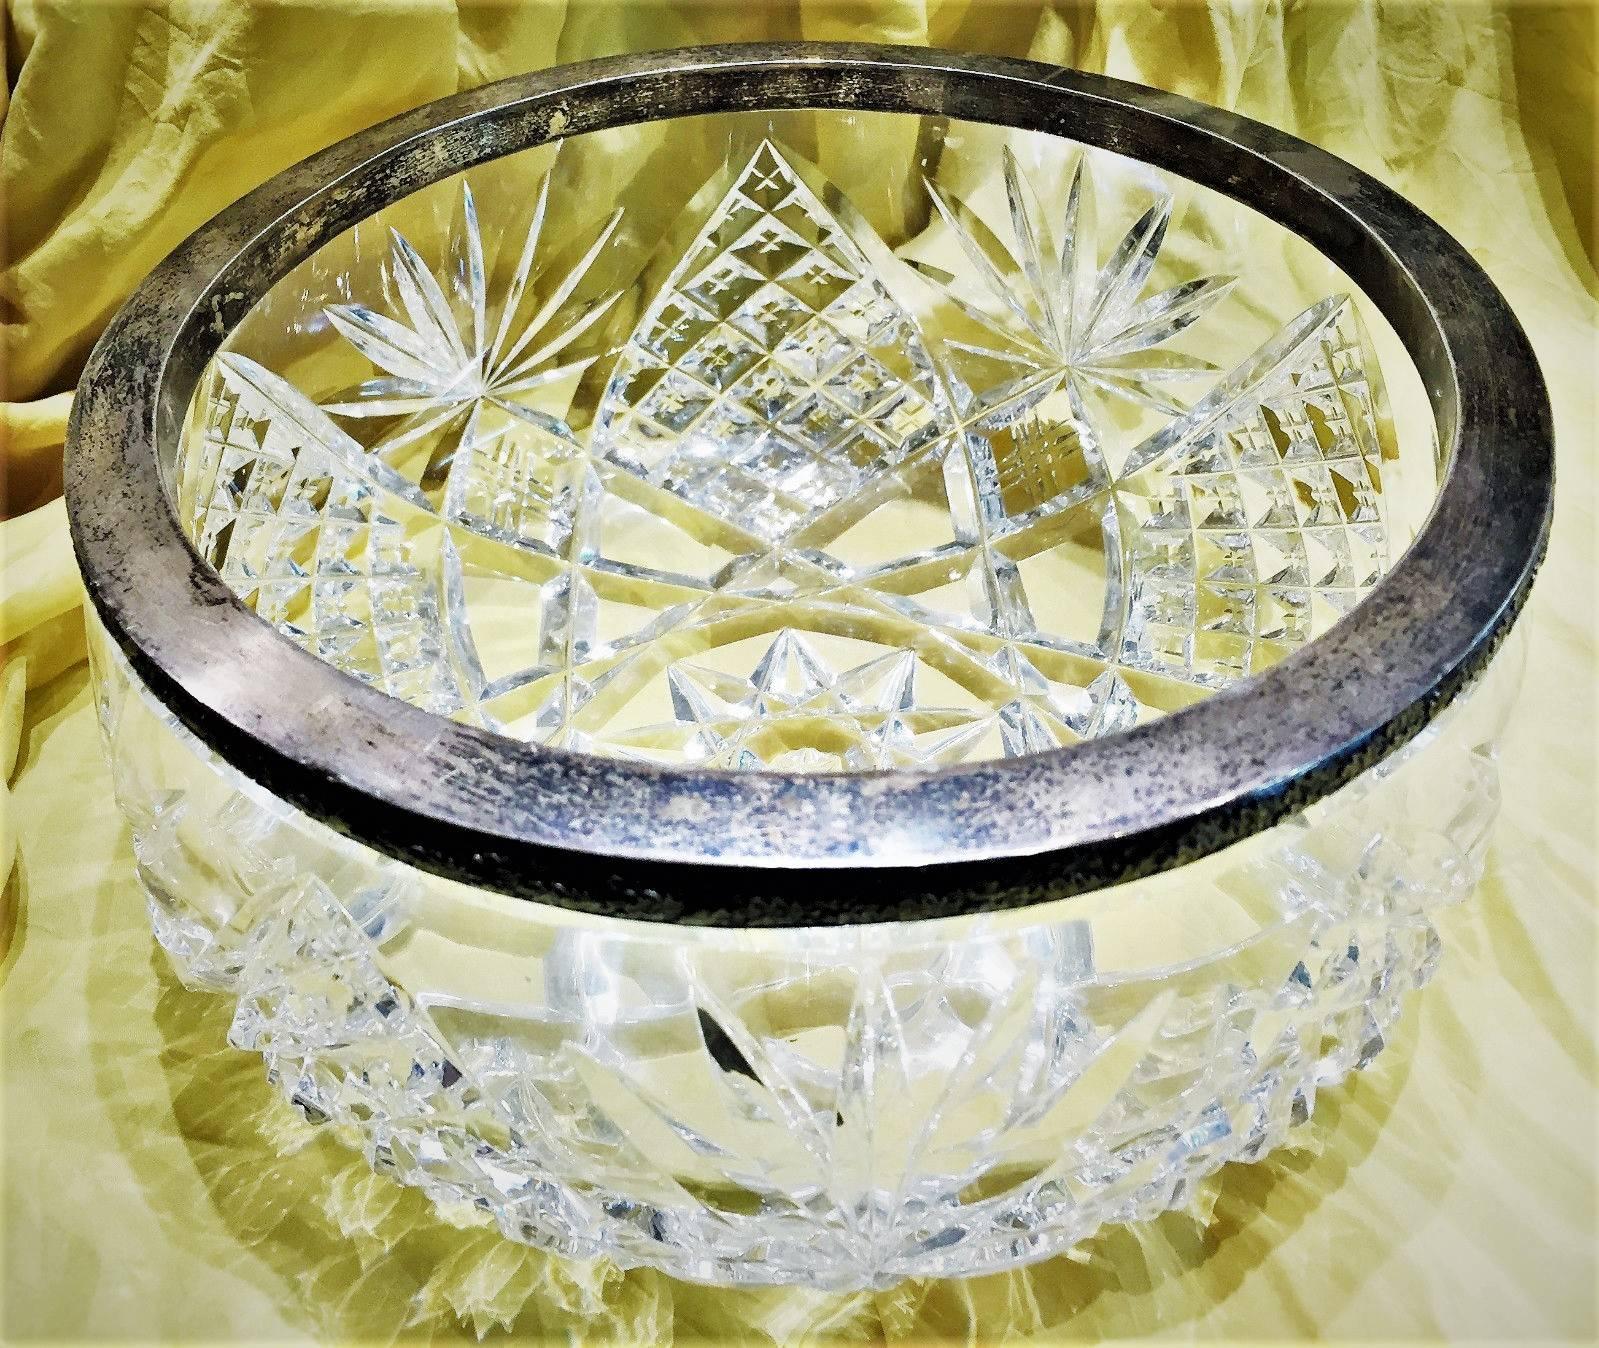 Un bol de service circulaire classique russe, en argent et en cristal taillé à la main, de dimensions inhabituellement grandes, fabriqué à Moscou, vers 1945. Le bord en argent présente un motif répété de feuilles de chêne et est poinçonné 